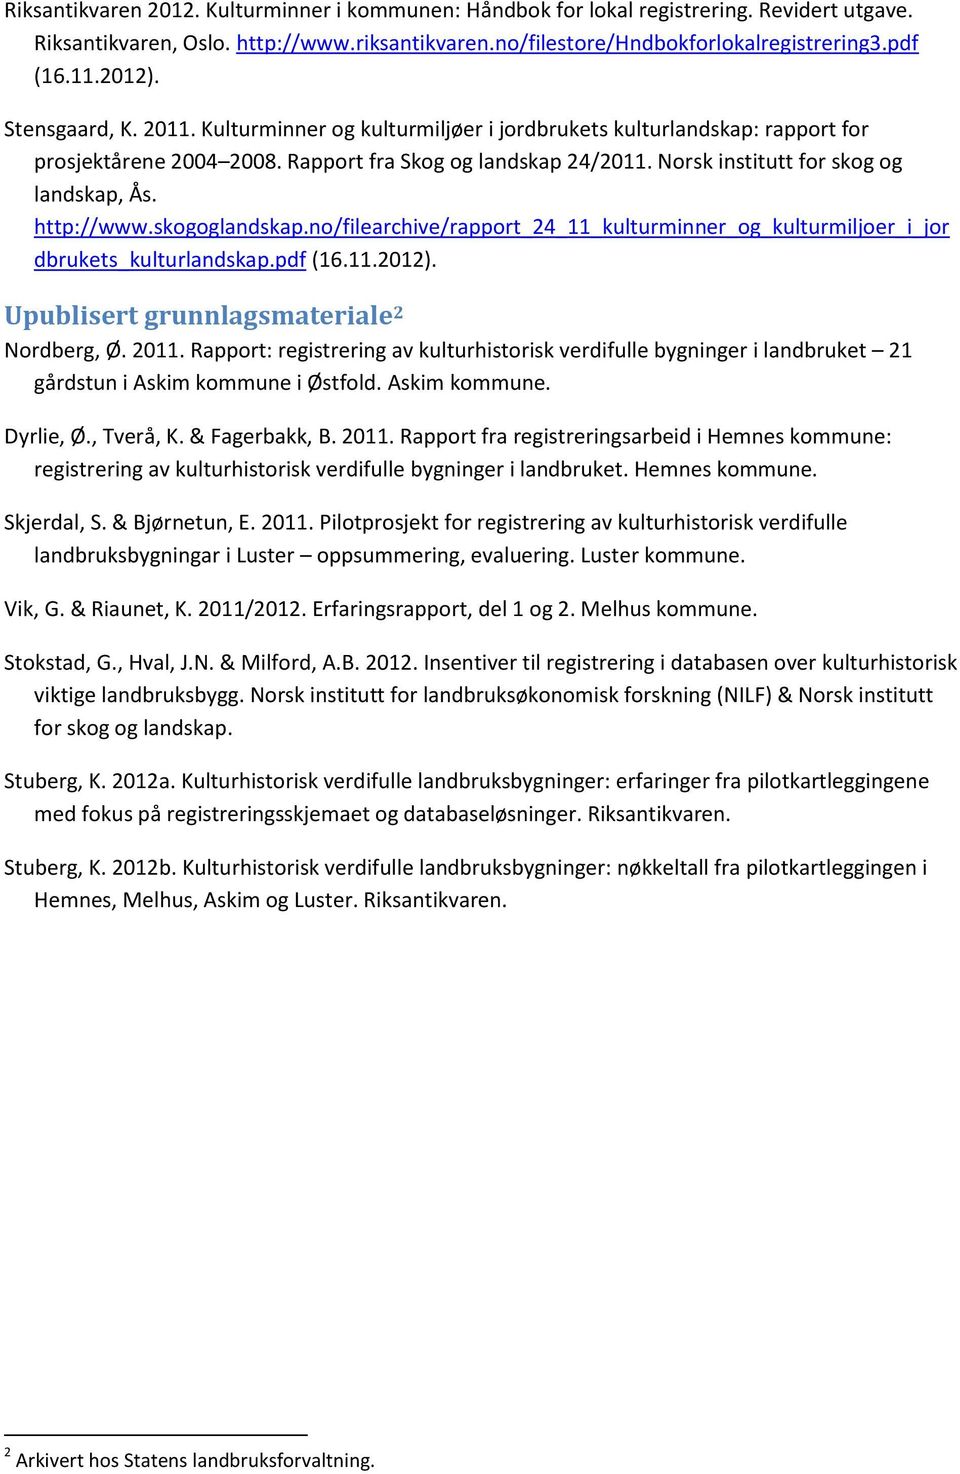 Norsk institutt for skog og landskap, Ås. http://www.skogoglandskap.no/filearchive/rapport_24_11_kulturminner_og_kulturmiljoer_i_jor dbrukets_kulturlandskap.pdf (16.11.2012).